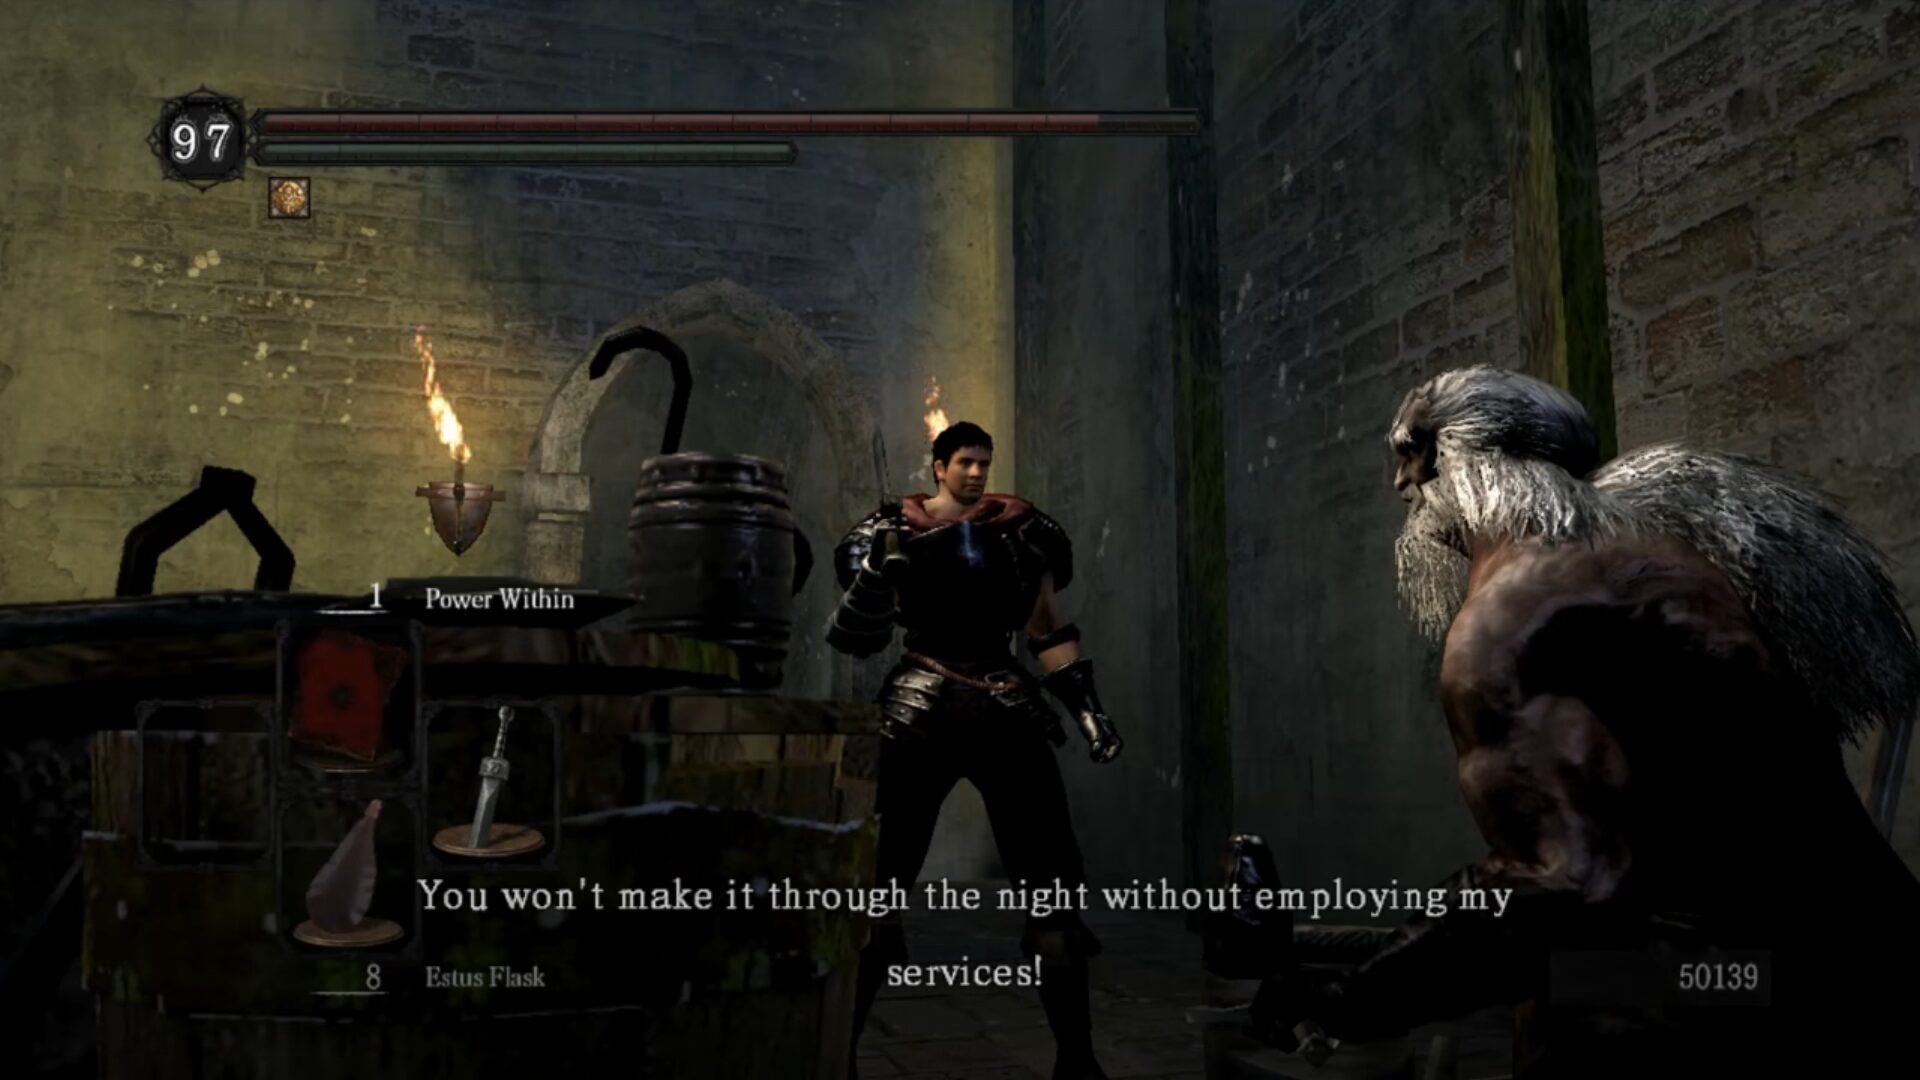 The Black Swordsman is playable in Dark Souls